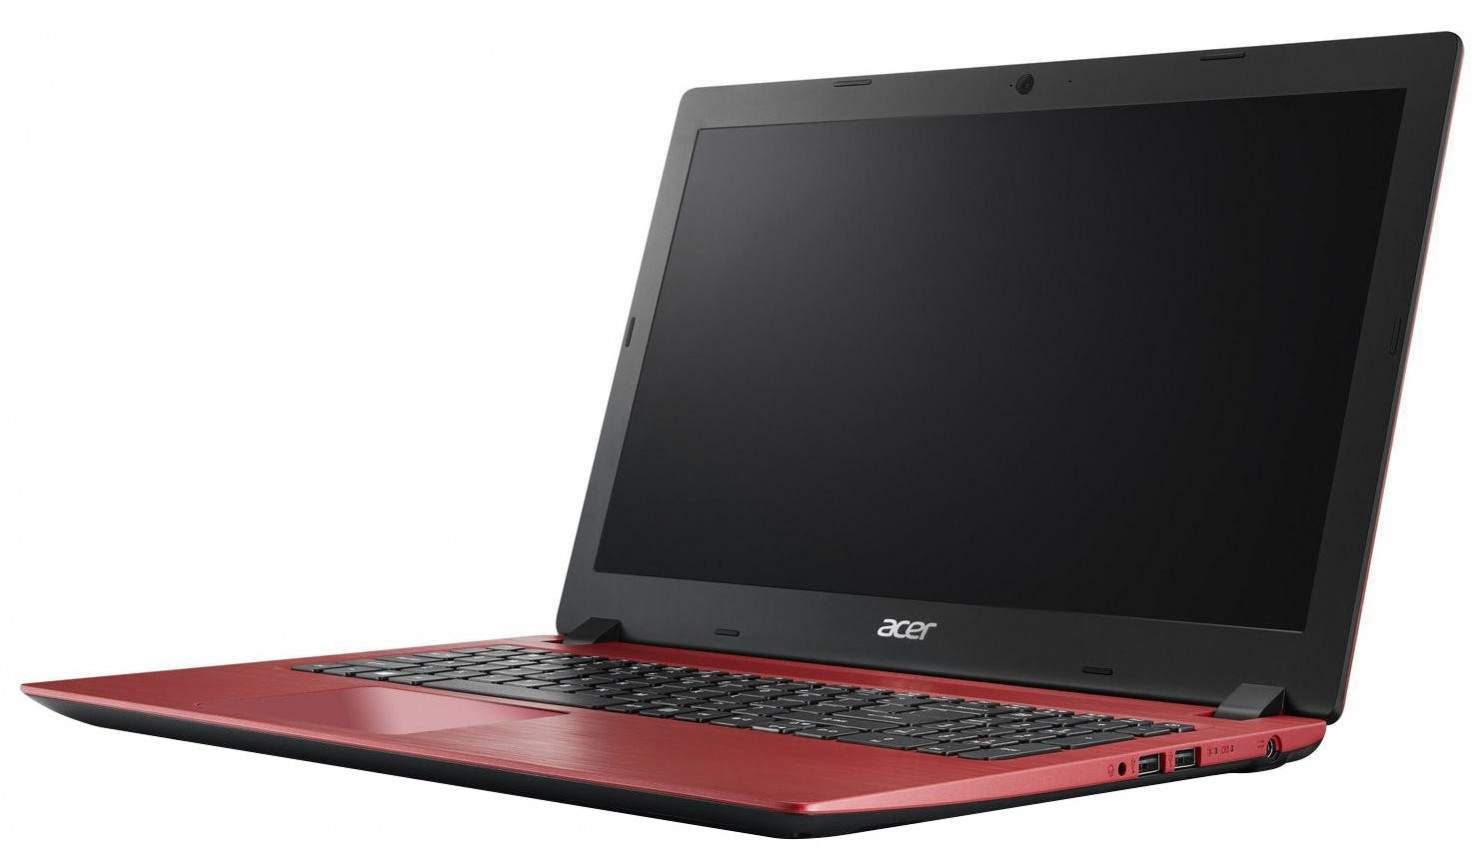 Harga Laptop Acer dengan RAM 4GB, Mulai dari Rp3 Jutaan 